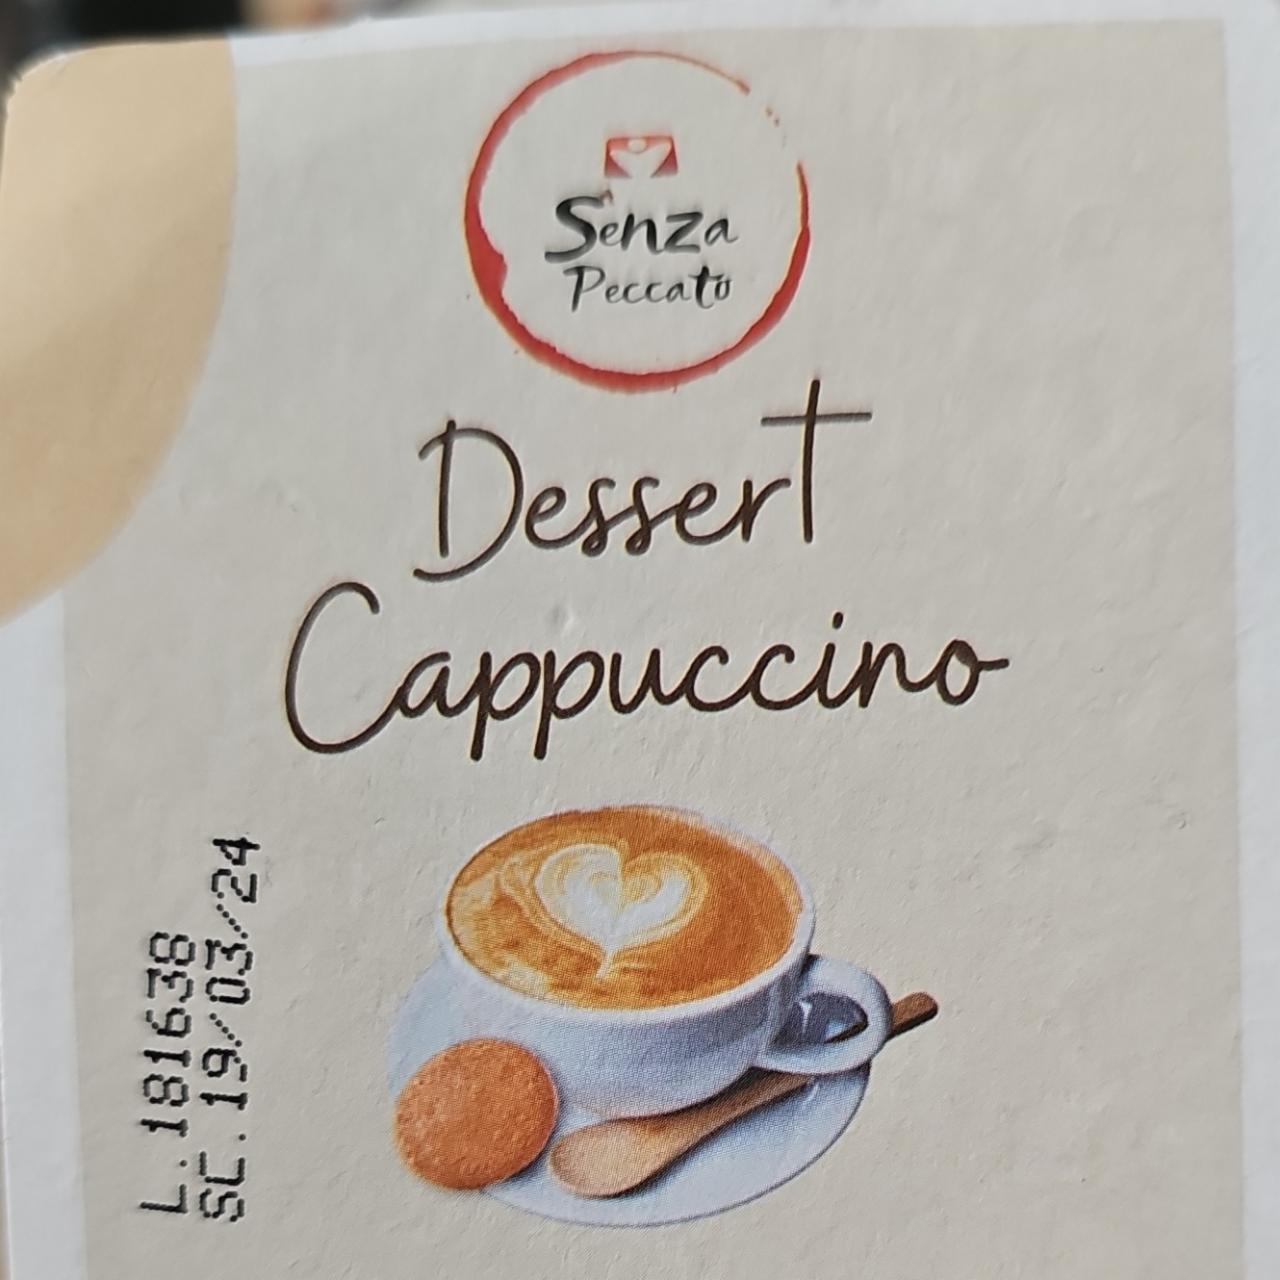 Fotografie - Dessert Cappuccino Senza Peccato